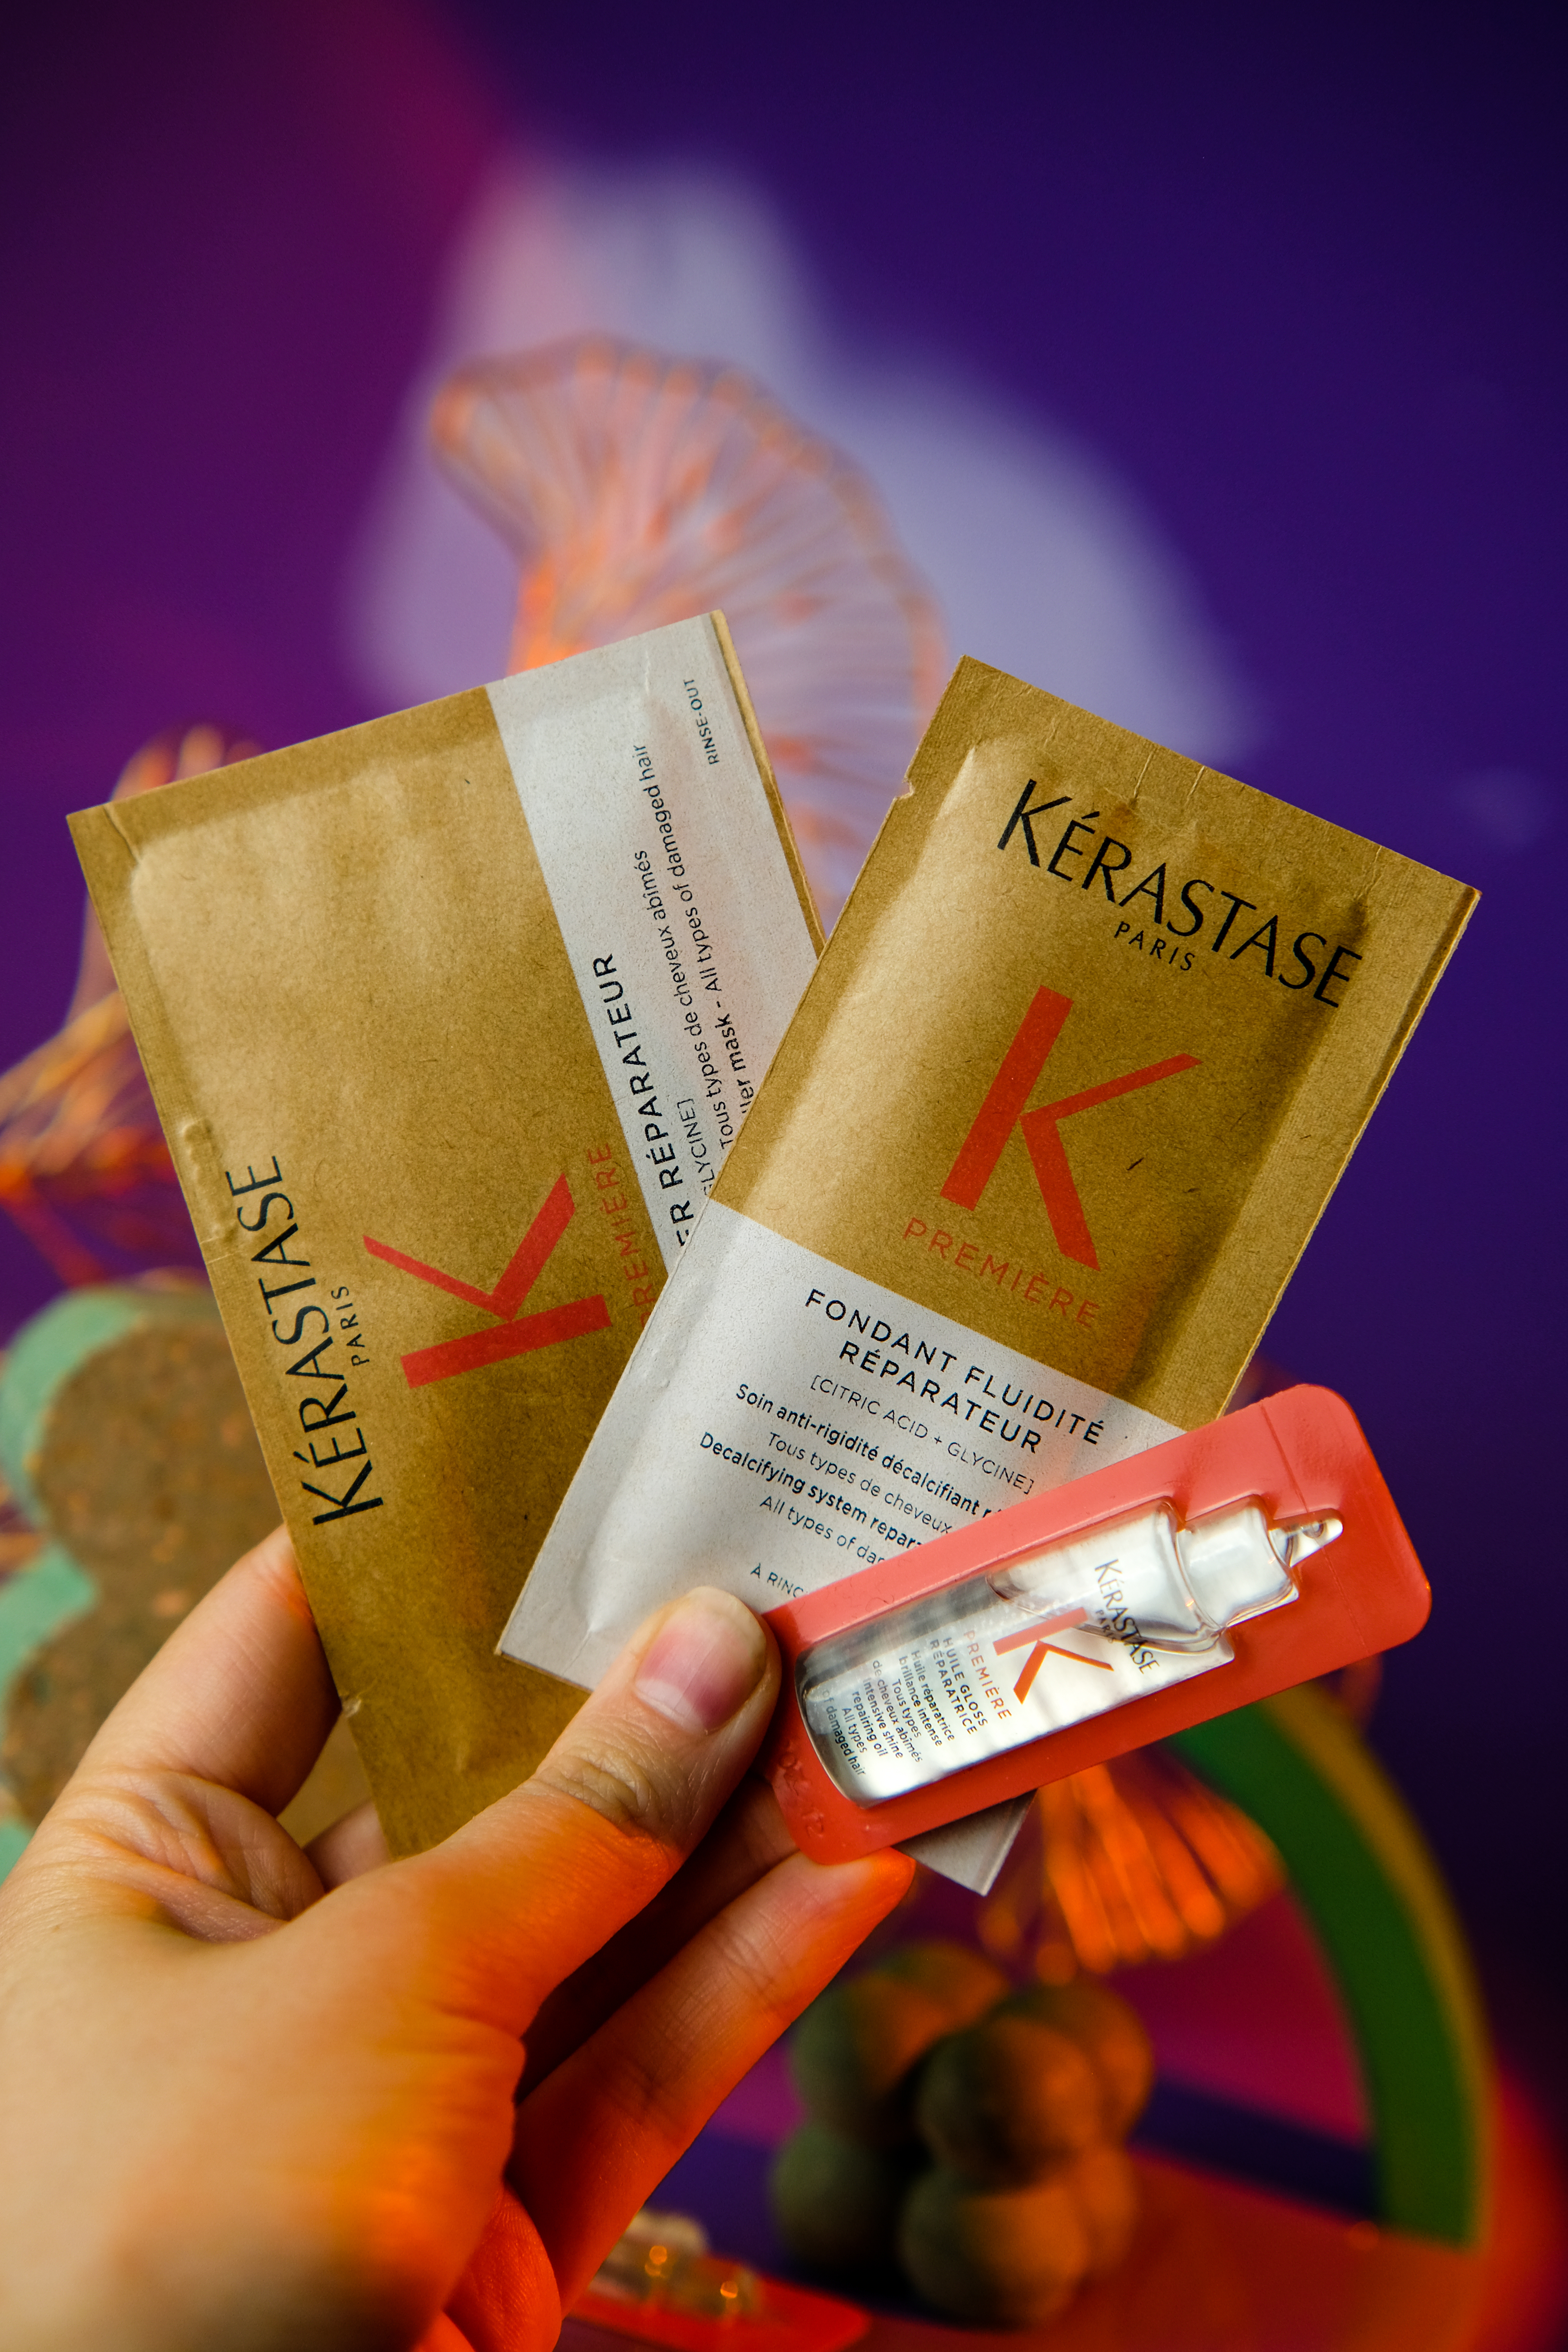 #testmakeupclub: Kerastase - ідеальний помічник для створення супер дорогої соломи